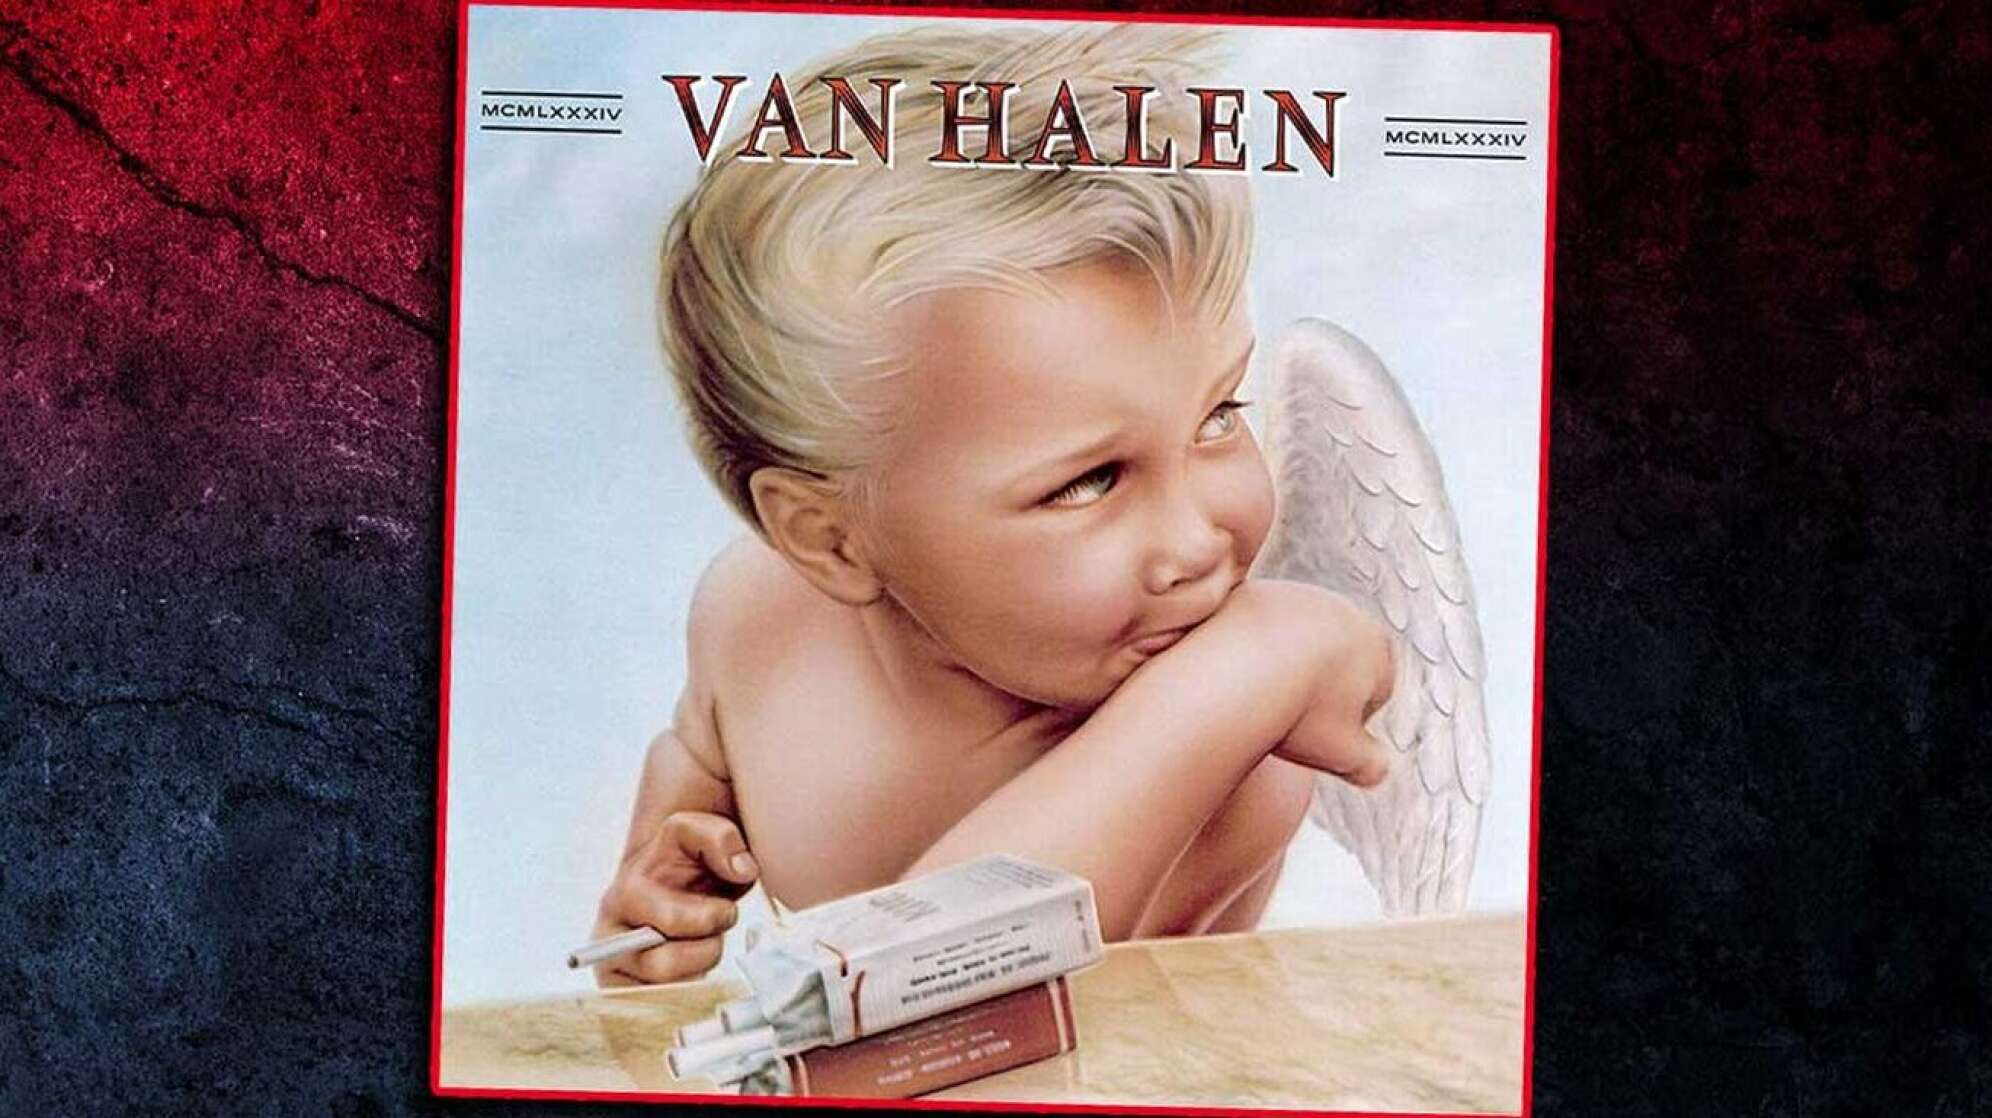 Album-Cover Van Halen "1984"